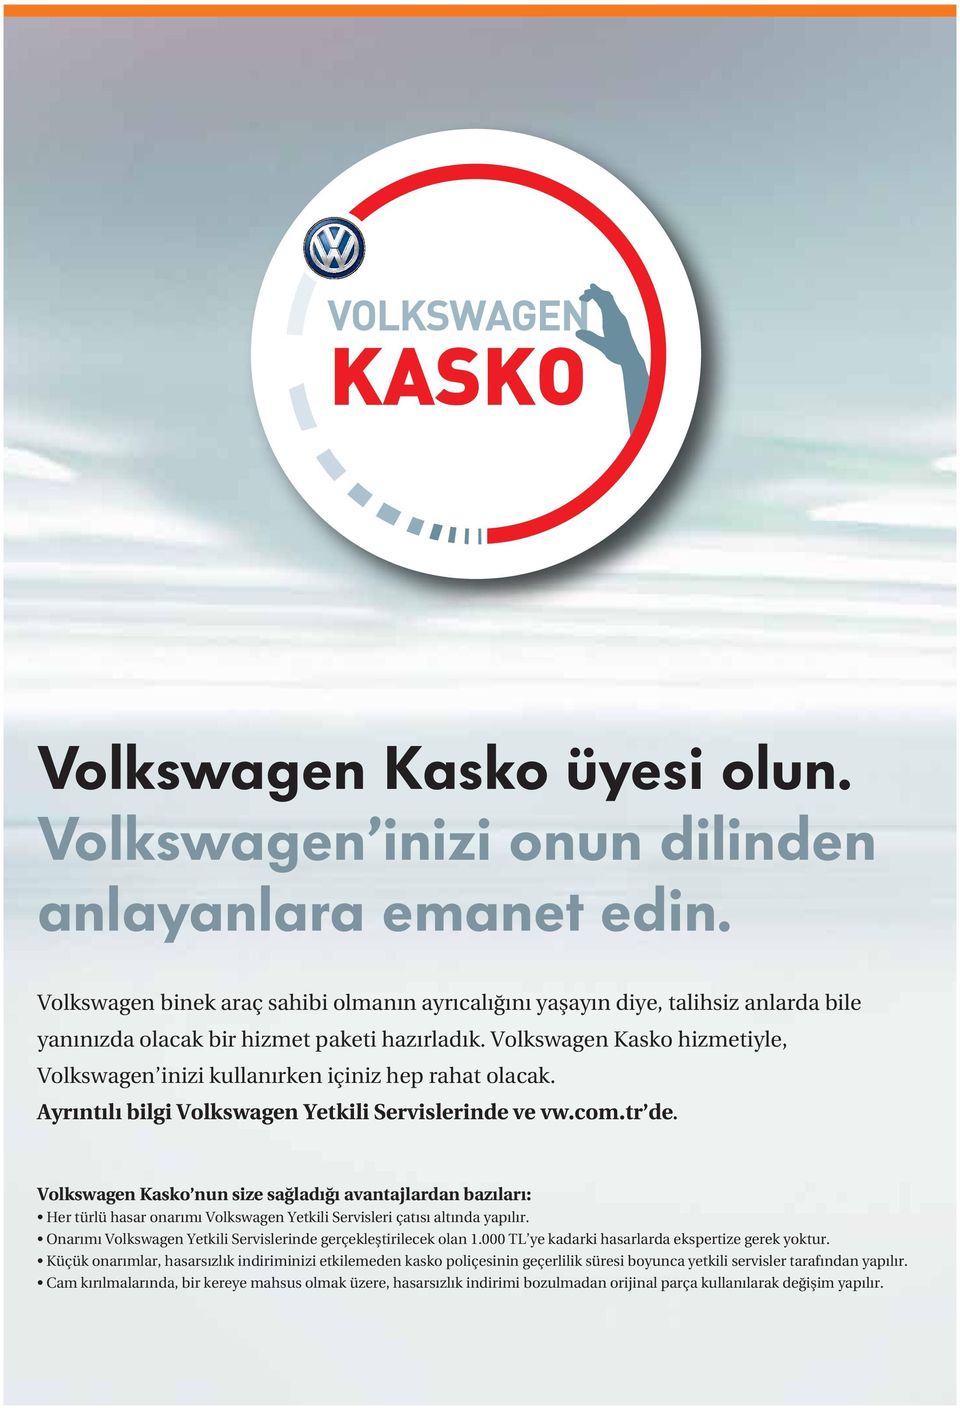 Volkswagen Kasko hizmetiyle, Volkswagen inizi kullanırken içiniz hep rahat olacak. Ayrıntılı bilgi Volkswagen Yetkili Servislerinde ve vw.com.tr de.